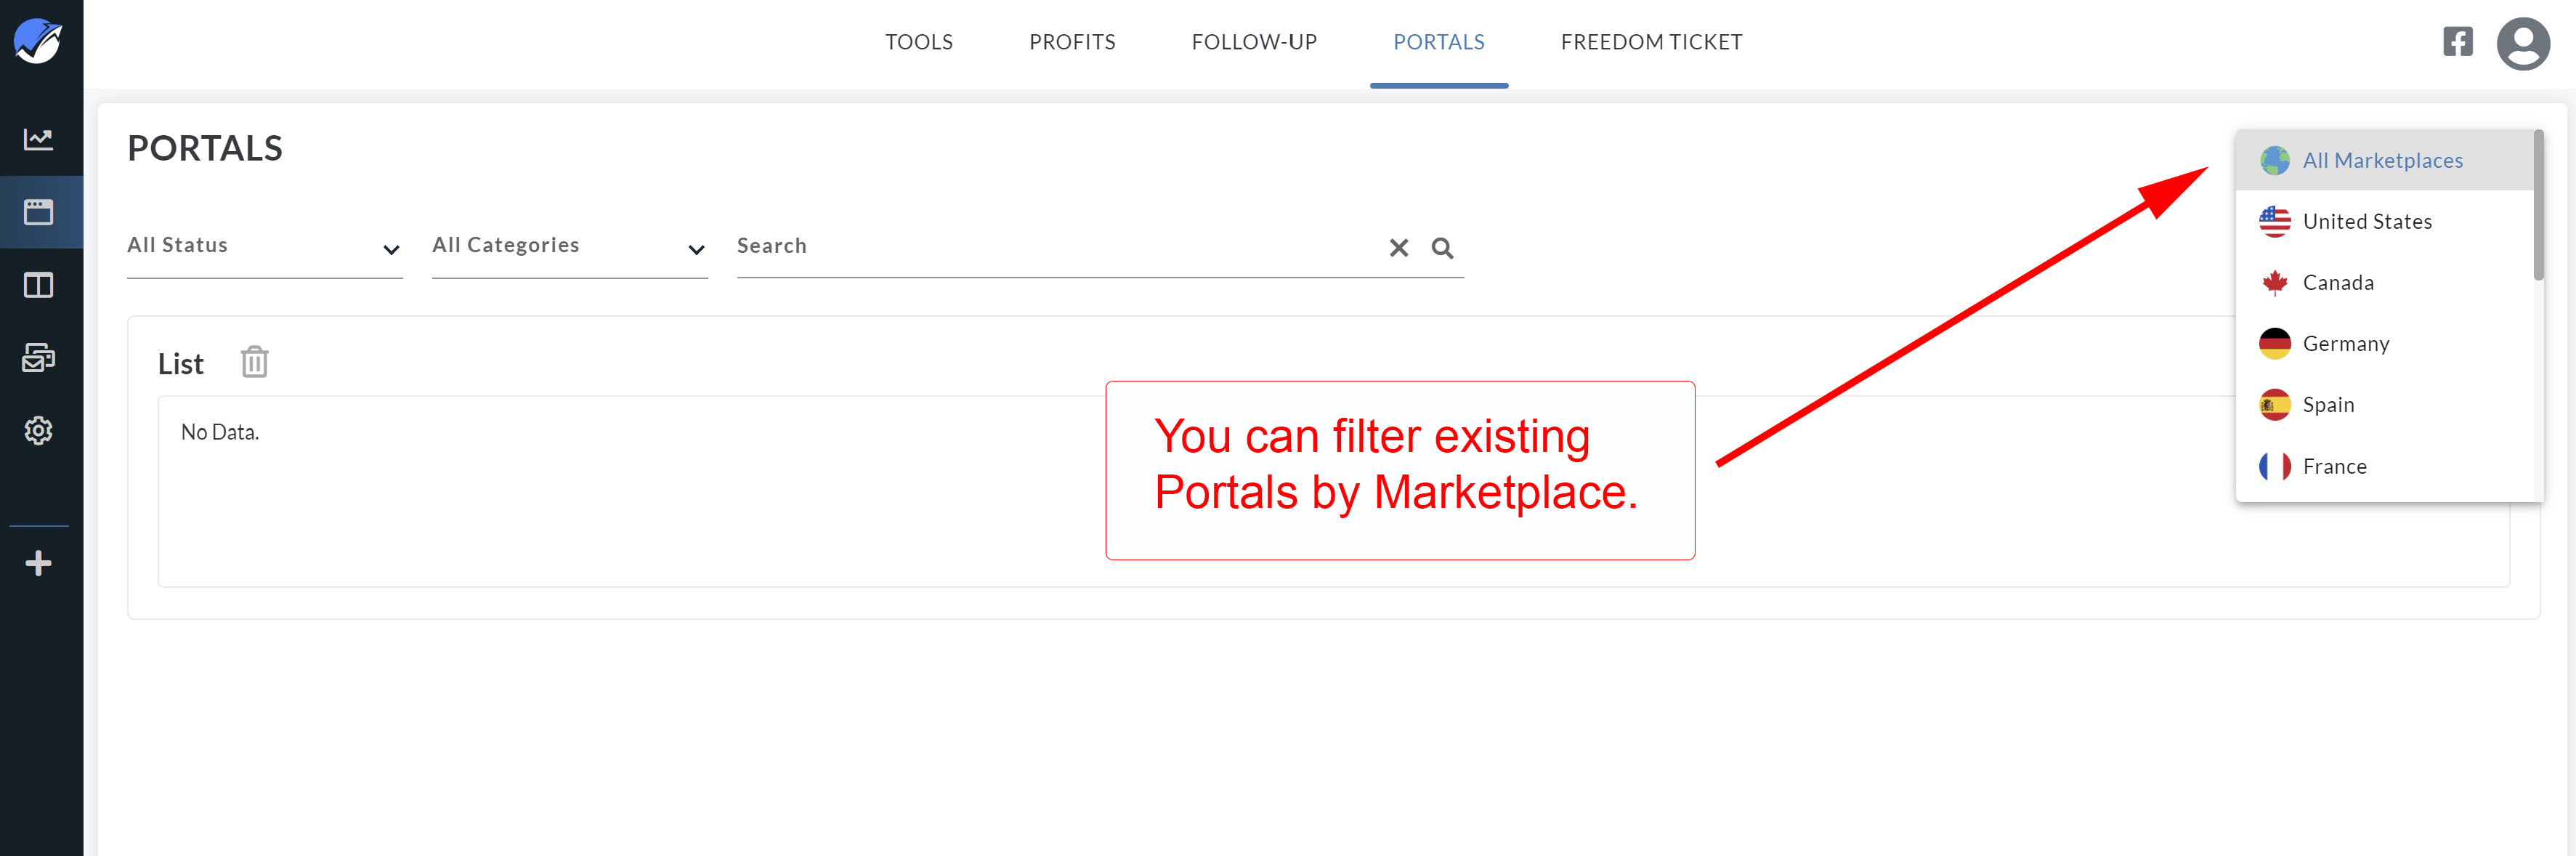 new_portals_filters3.jpg